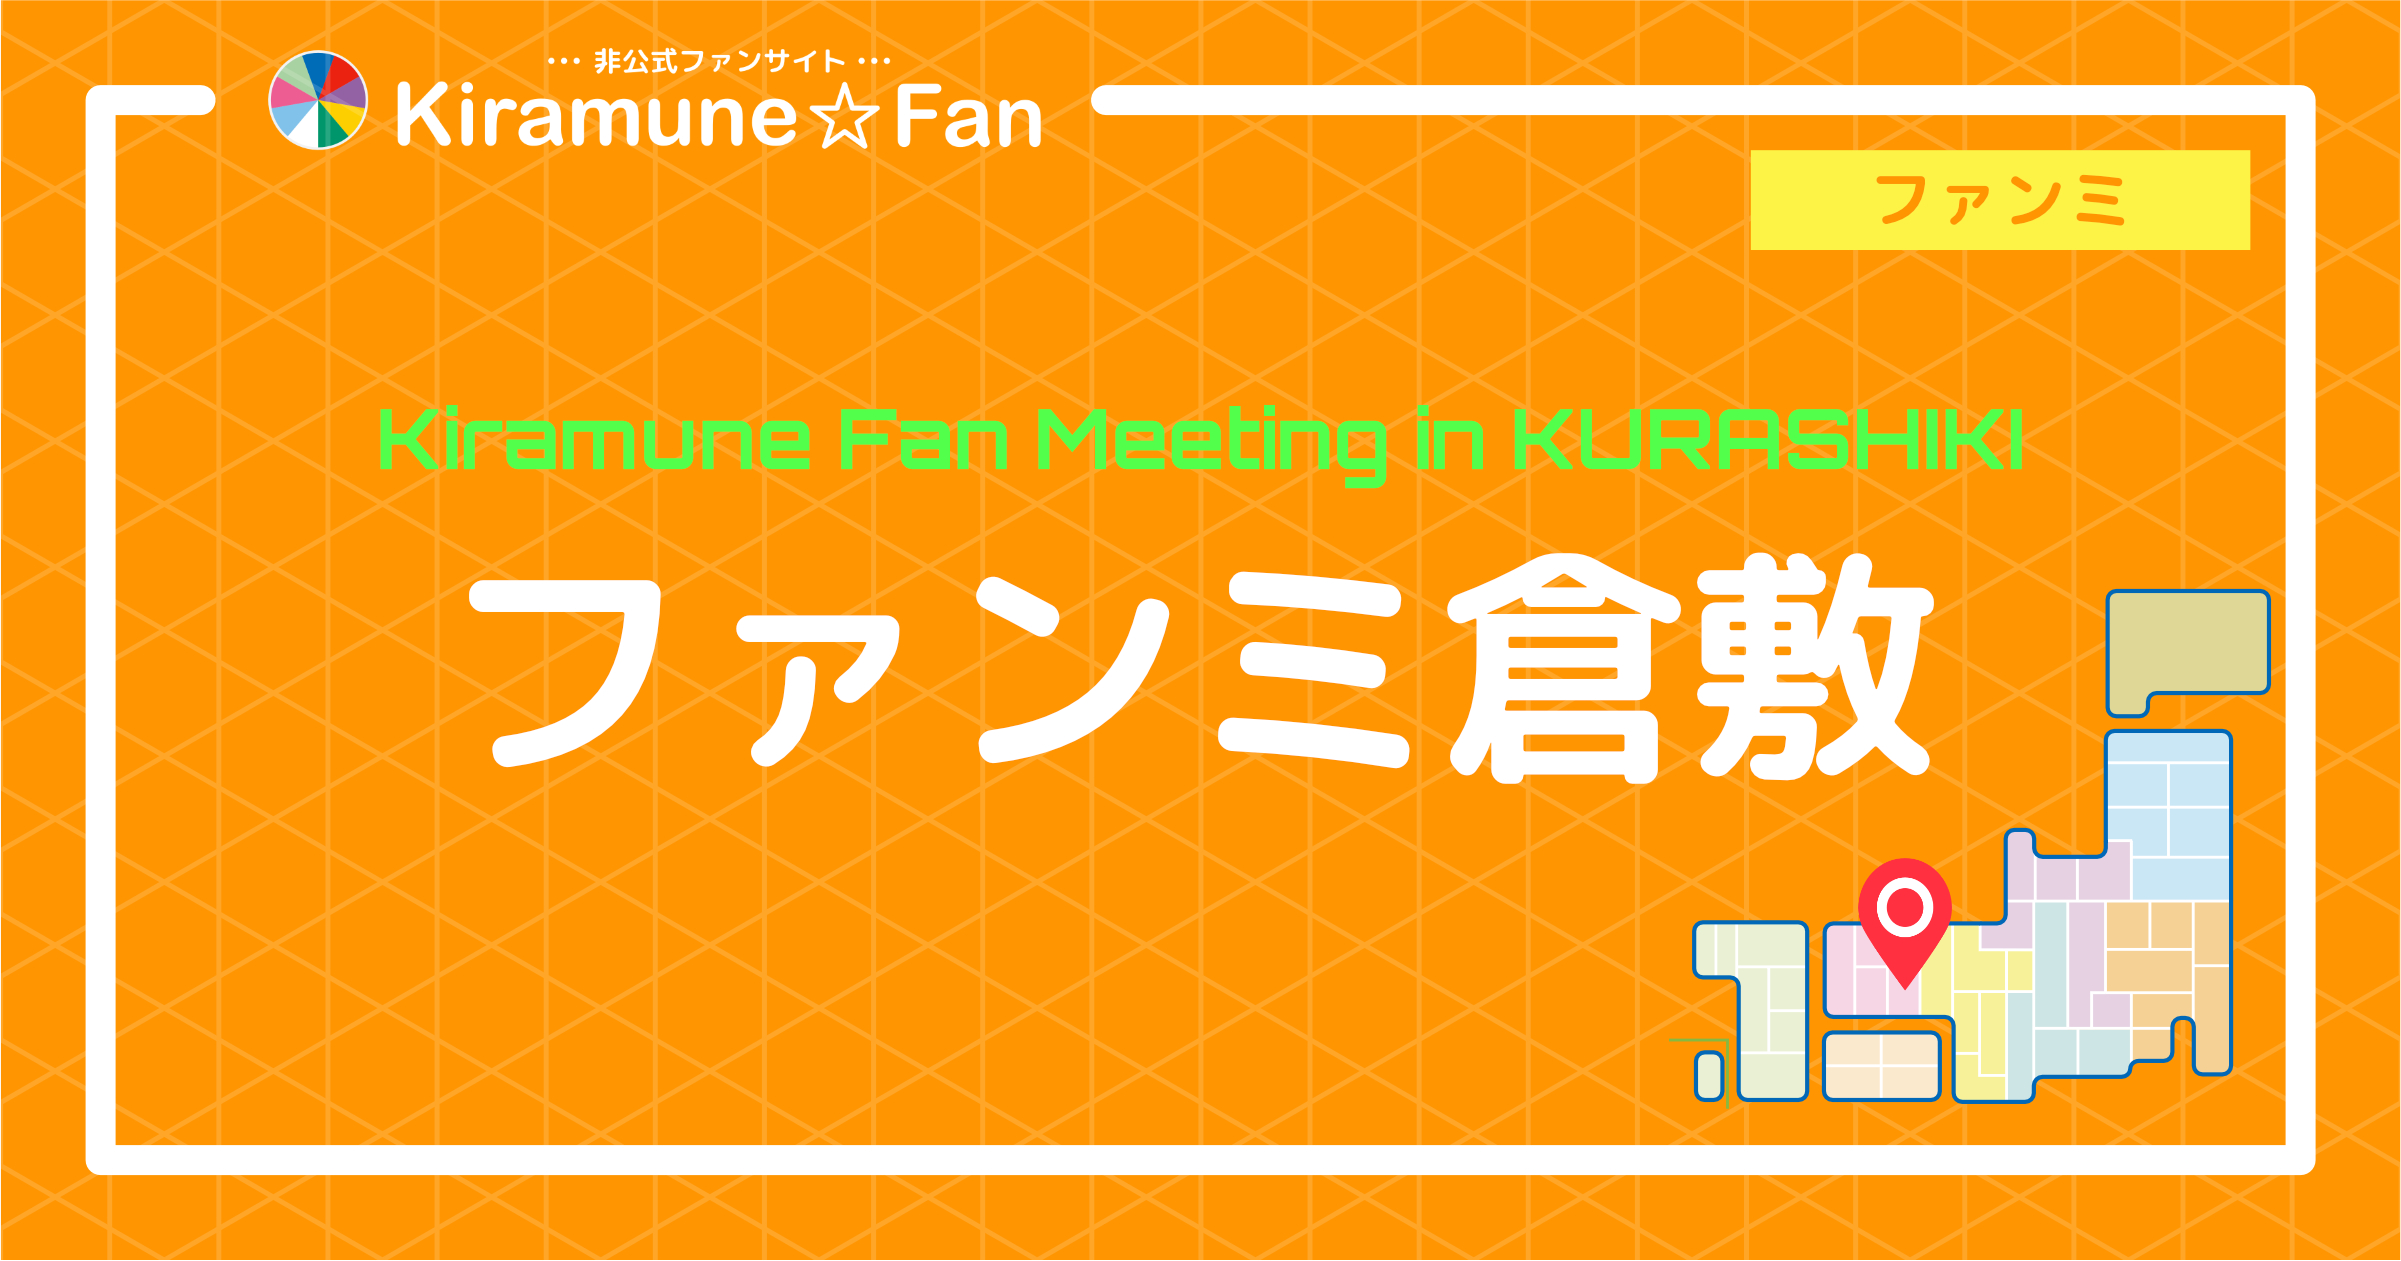 Kiramune Fan Meeting in KURASHIKI | Kiramune☆Fan